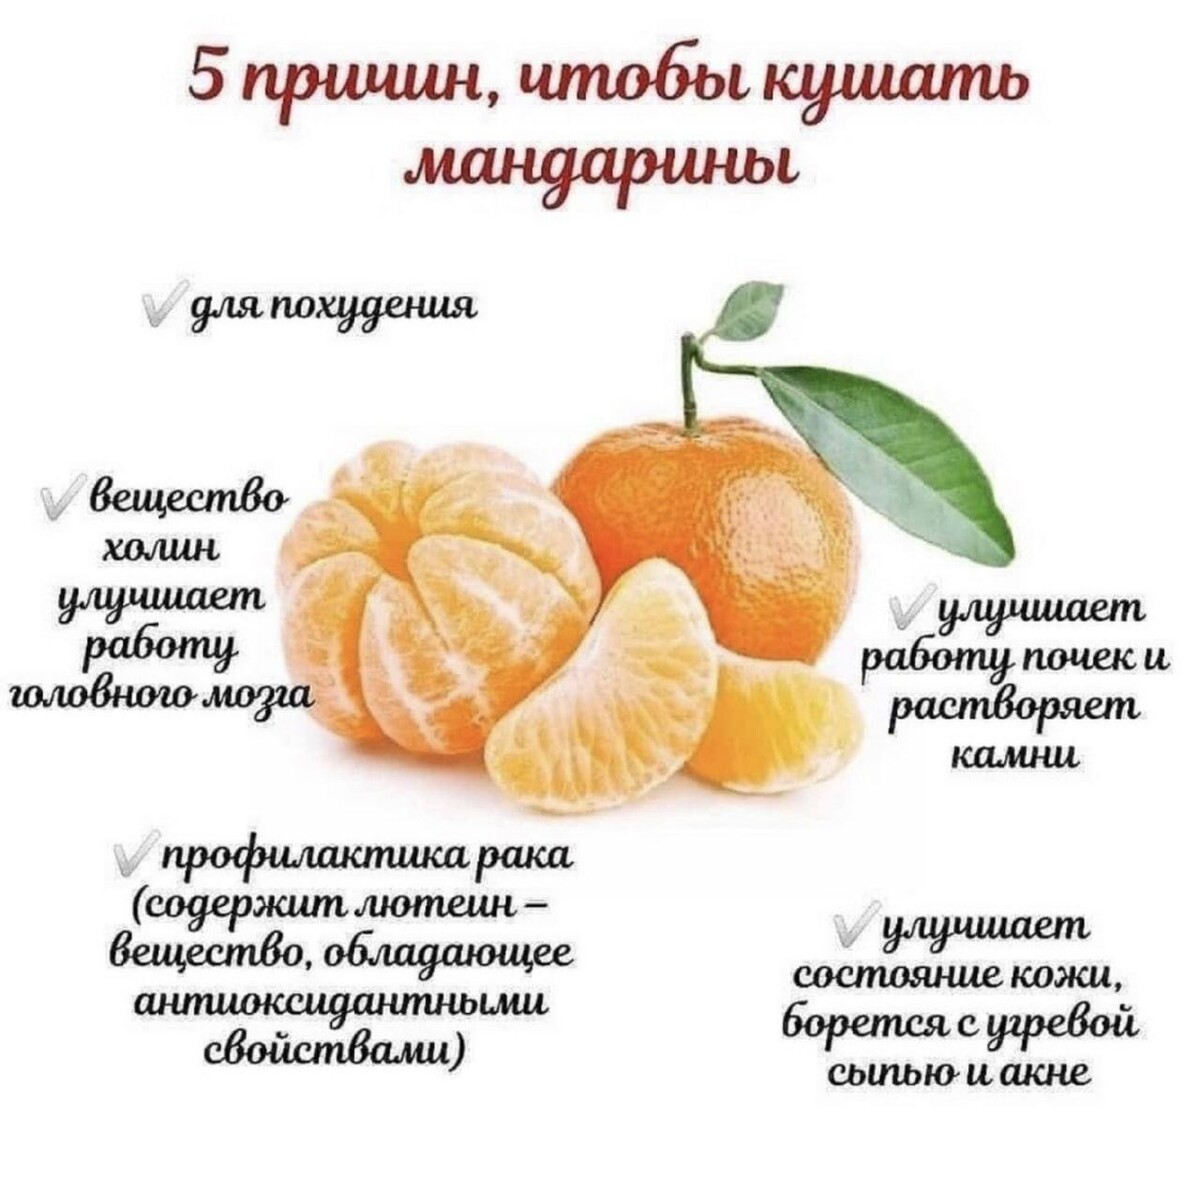 Сколько можно съедать апельсинов в день. Польза мандаринов. Мандарины польза. Чем полезны мандарины. Витамины в мандаринах.